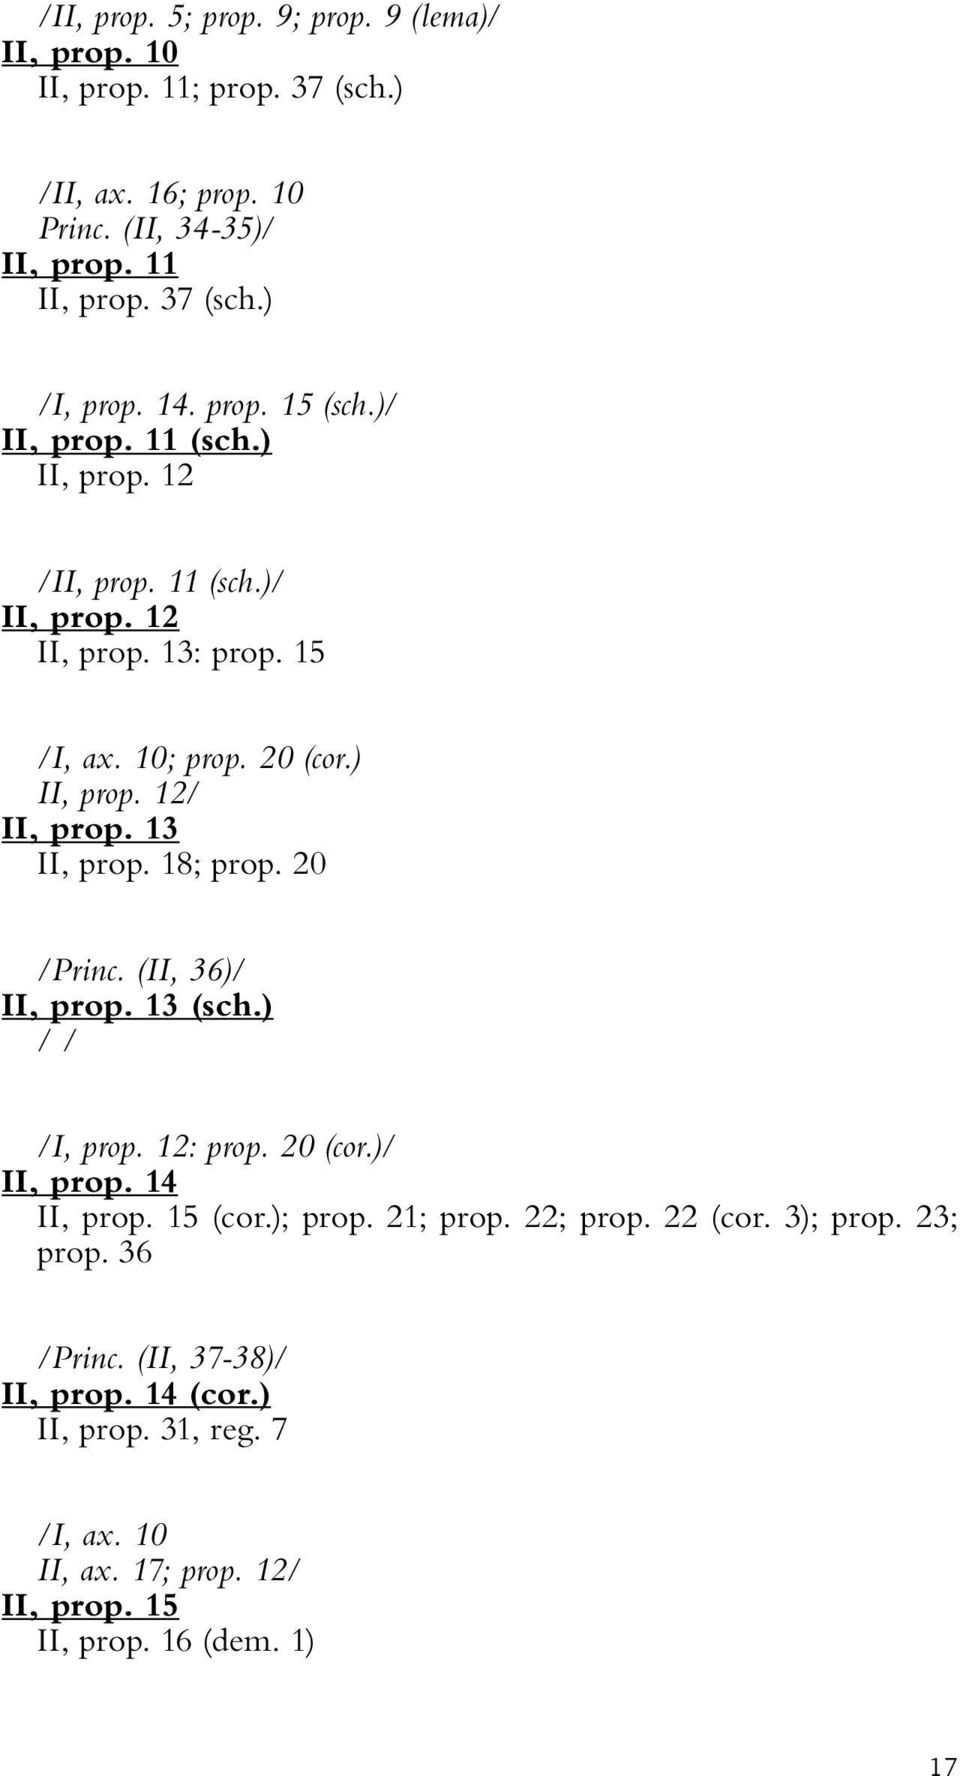 13 II, prop. 18; prop. 20 /Princ. (II, 36)/ II, prop. 13 (sch.) /I, prop. 12: prop. 20 (cor.)/ II, prop. 14 II, prop. 15 (cor.); prop. 21; prop. 22; prop. 22 (cor.